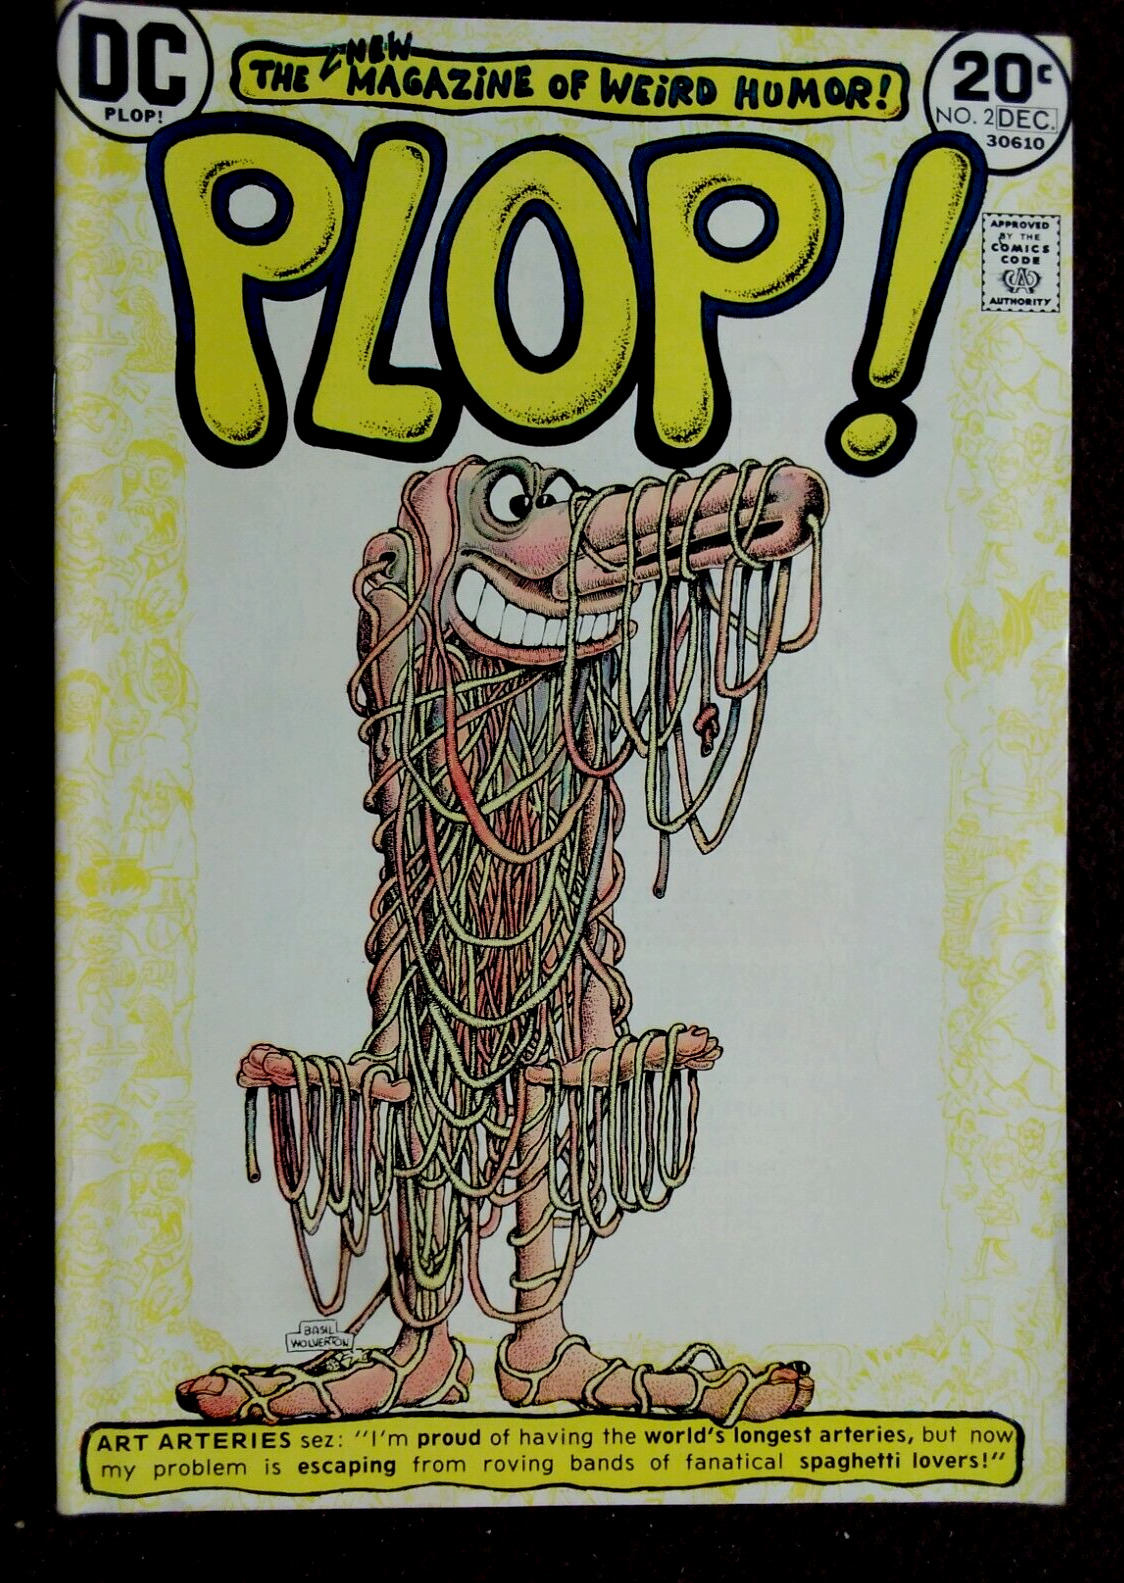 PLOP #2 DC COMIC 1973 BASIL WOLVERTON VERY GOOD PLUS